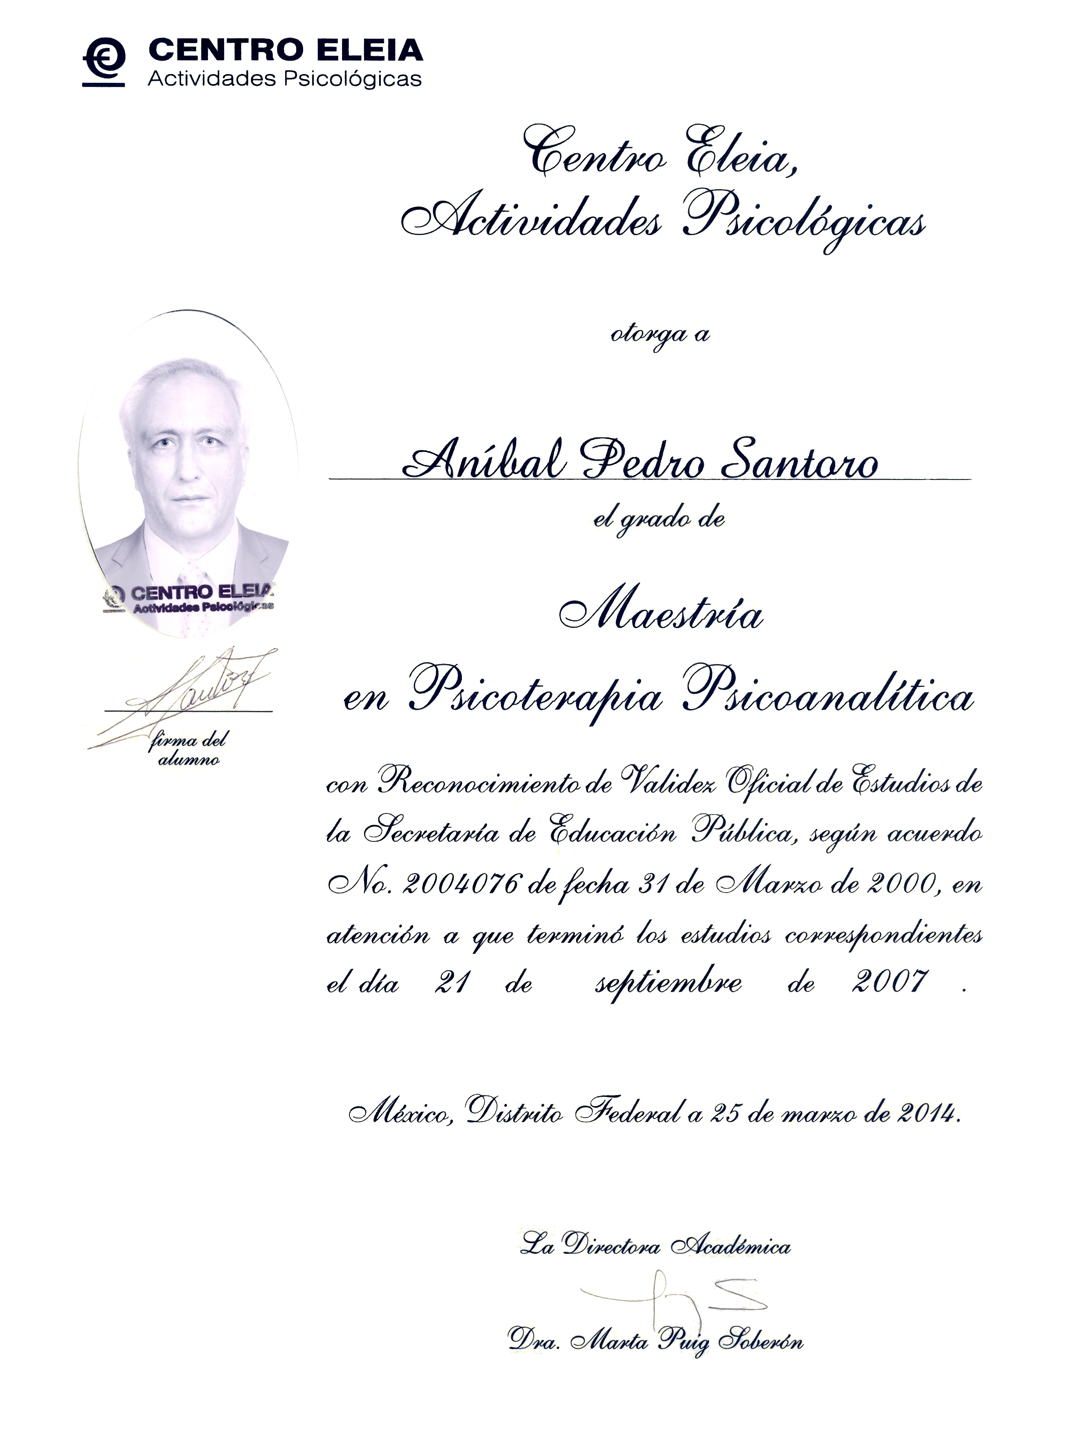 Dr. Aníbal P Santoro - Maestro en Psicoterapia Psicoanalítica #1